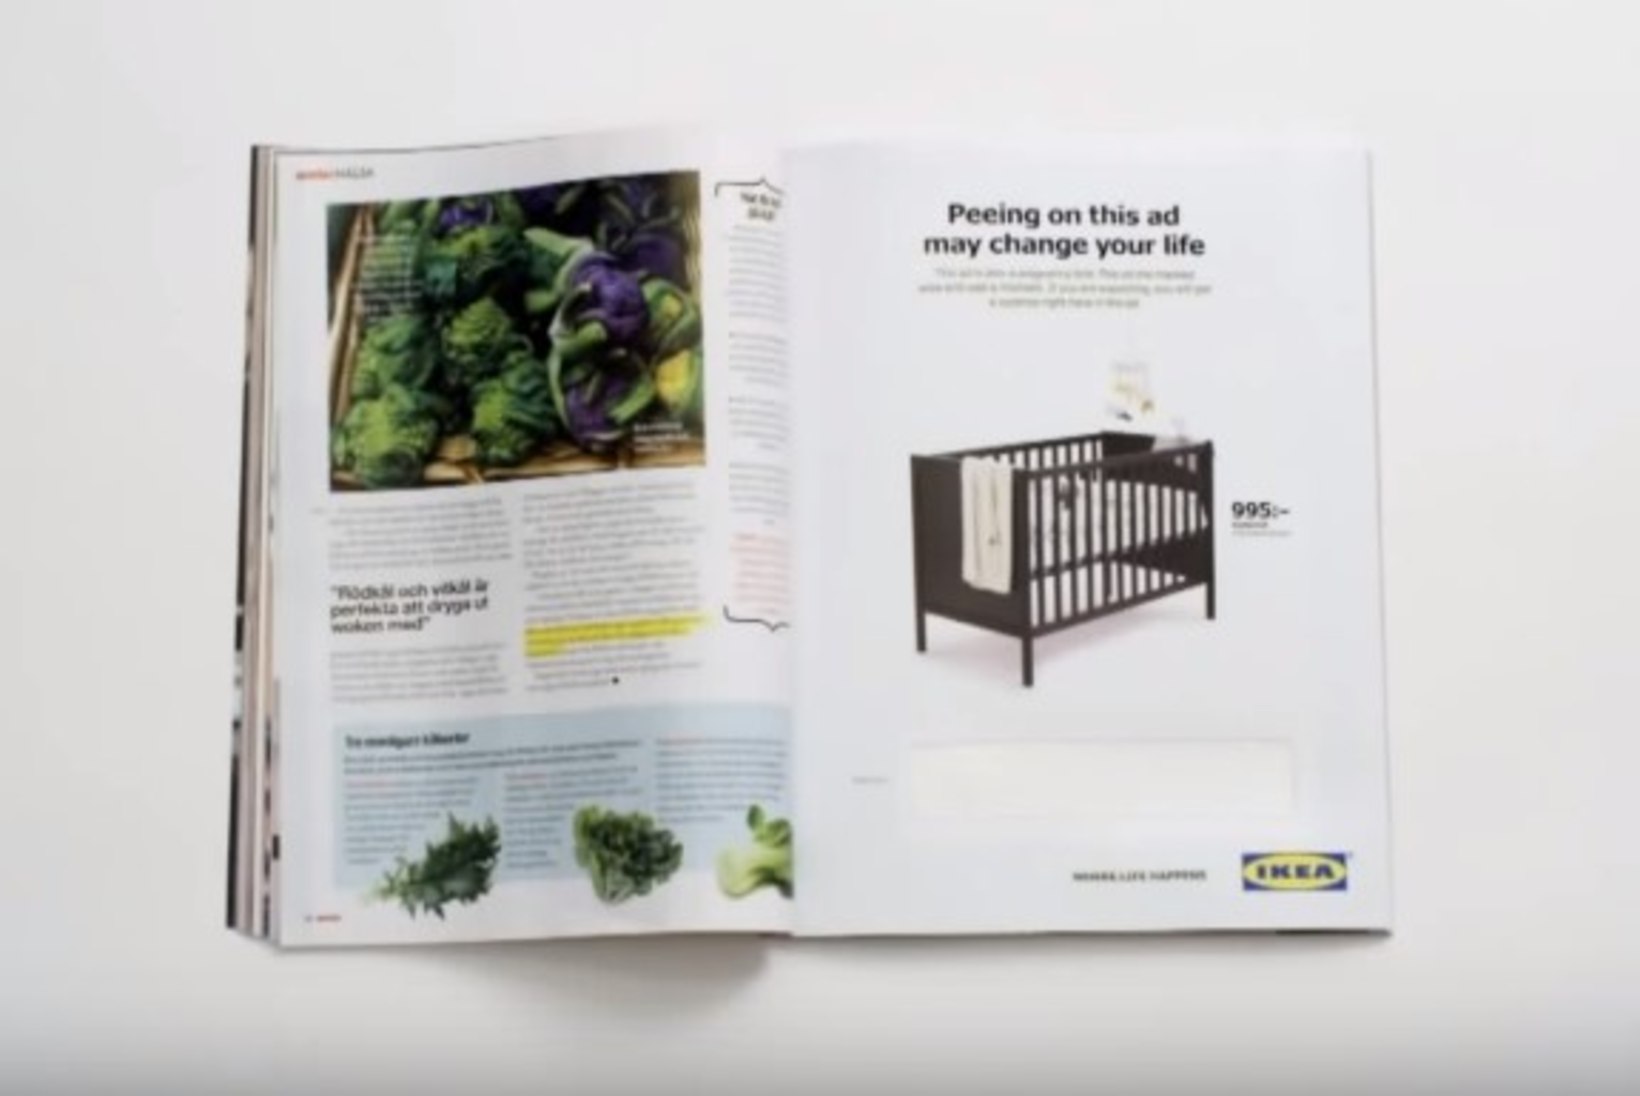 IKEA kutsub kliente üles ajakirjale pissima